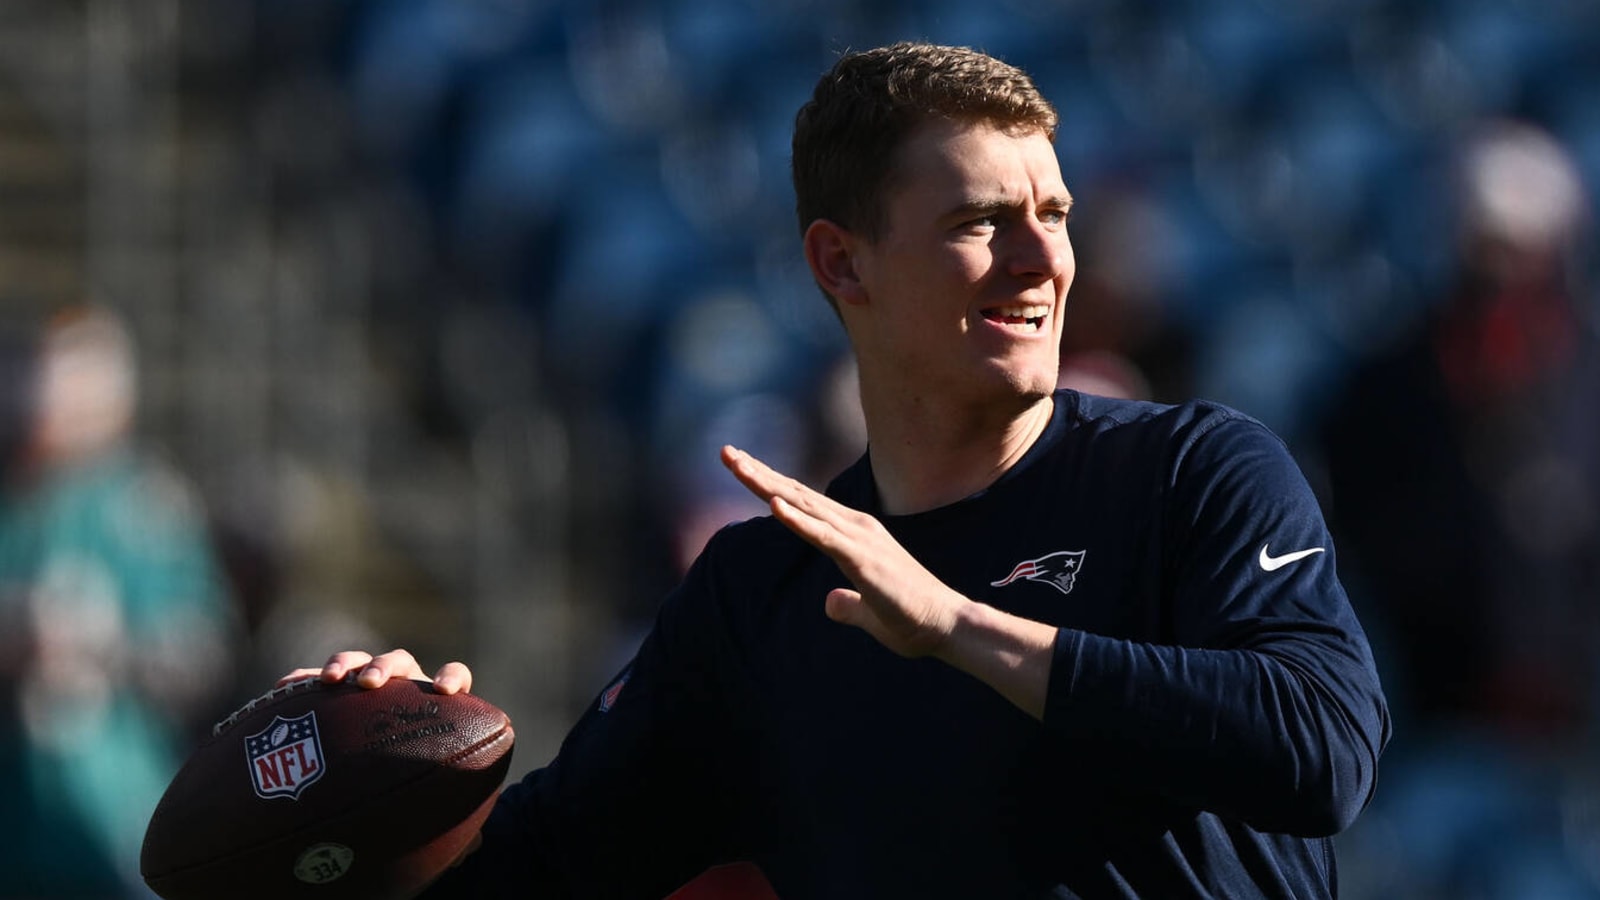 Patriots captain praises 'resilient' Mac Jones amid uncertainty